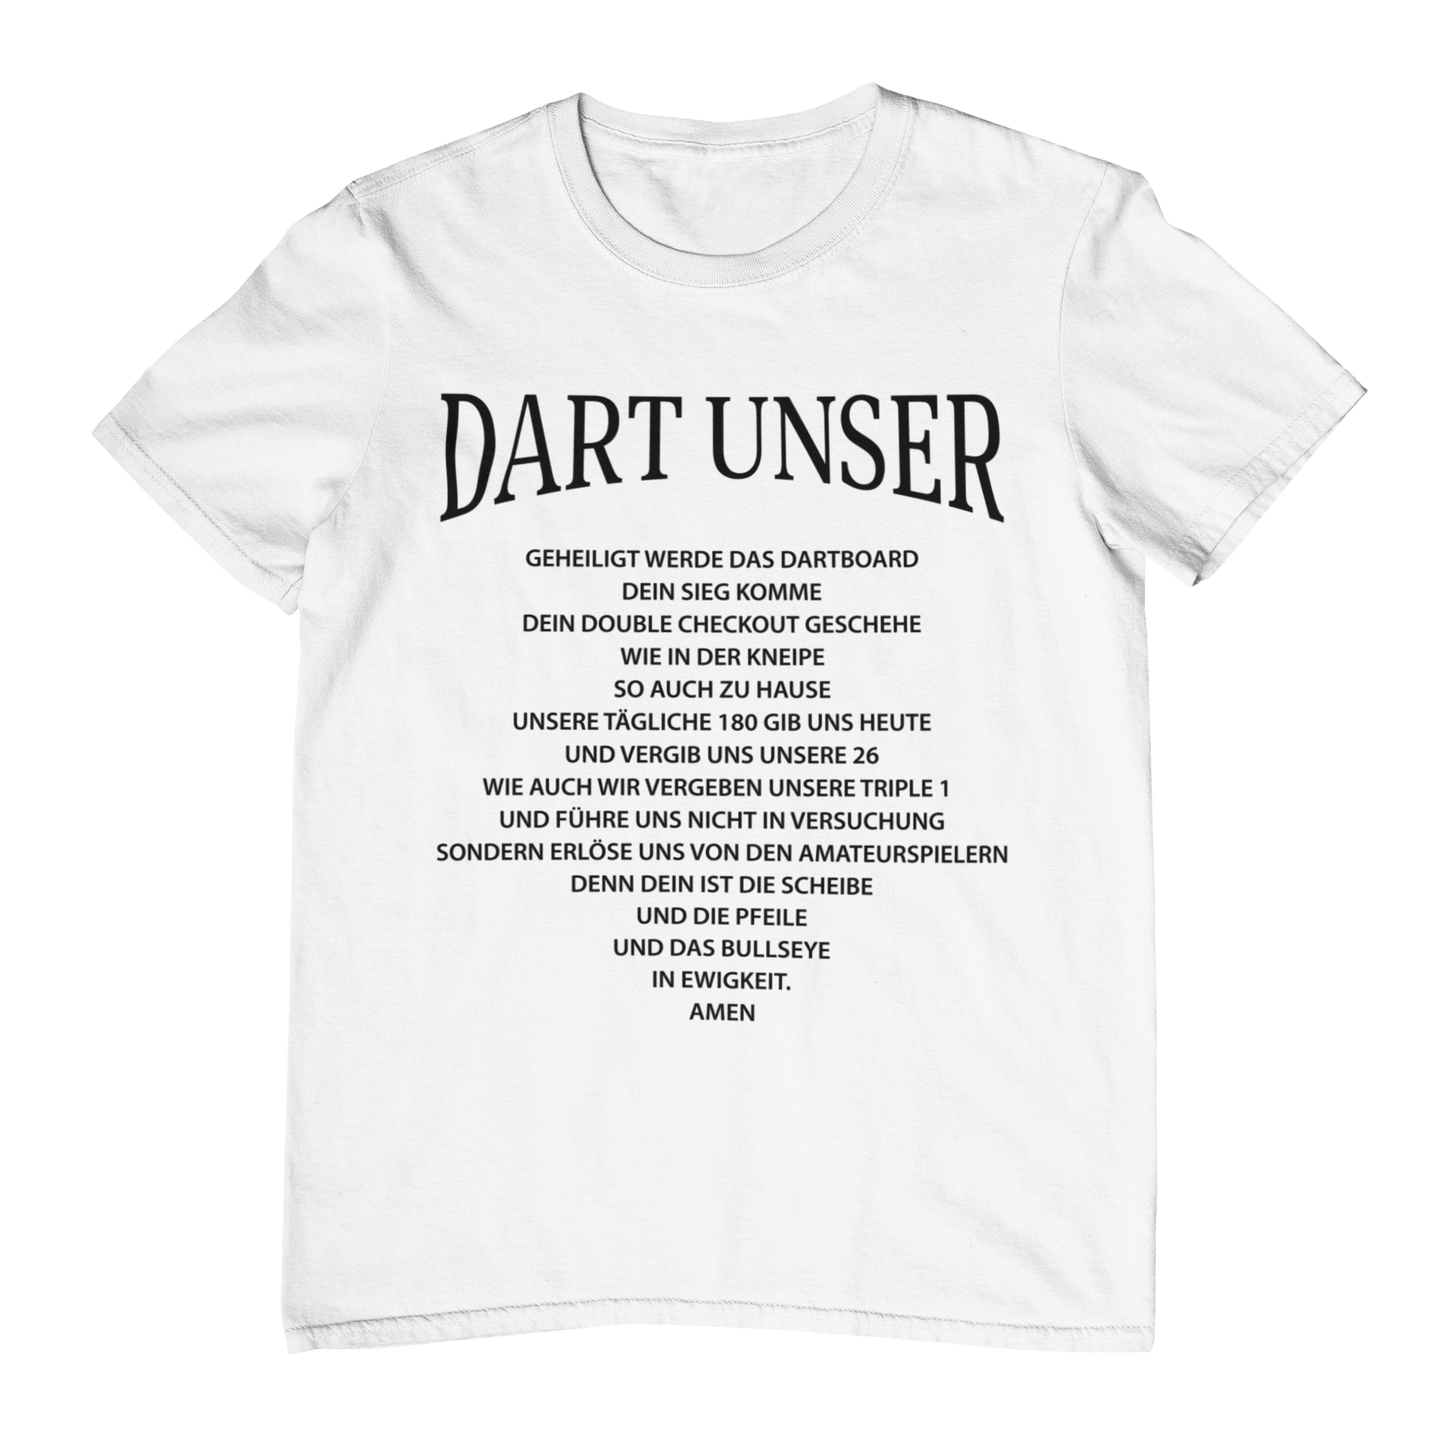 Dart unser - Shirt (Frontprint / Aufdruck vorne)